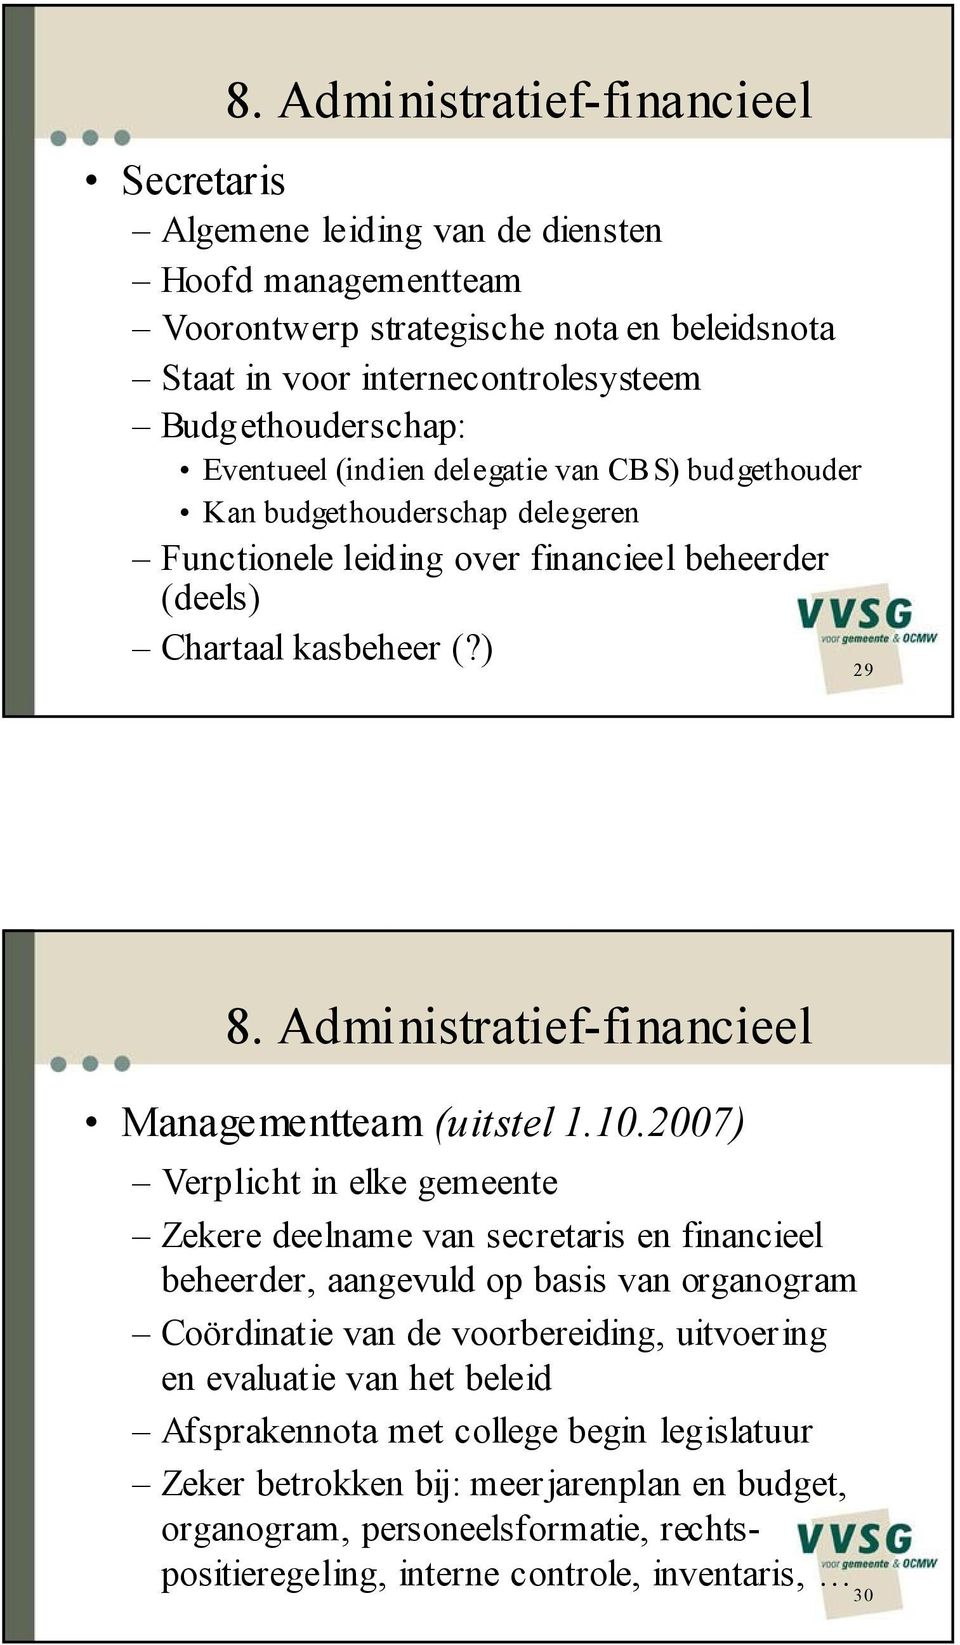 Administratief-financieel Managementteam (uitstel 1.10.